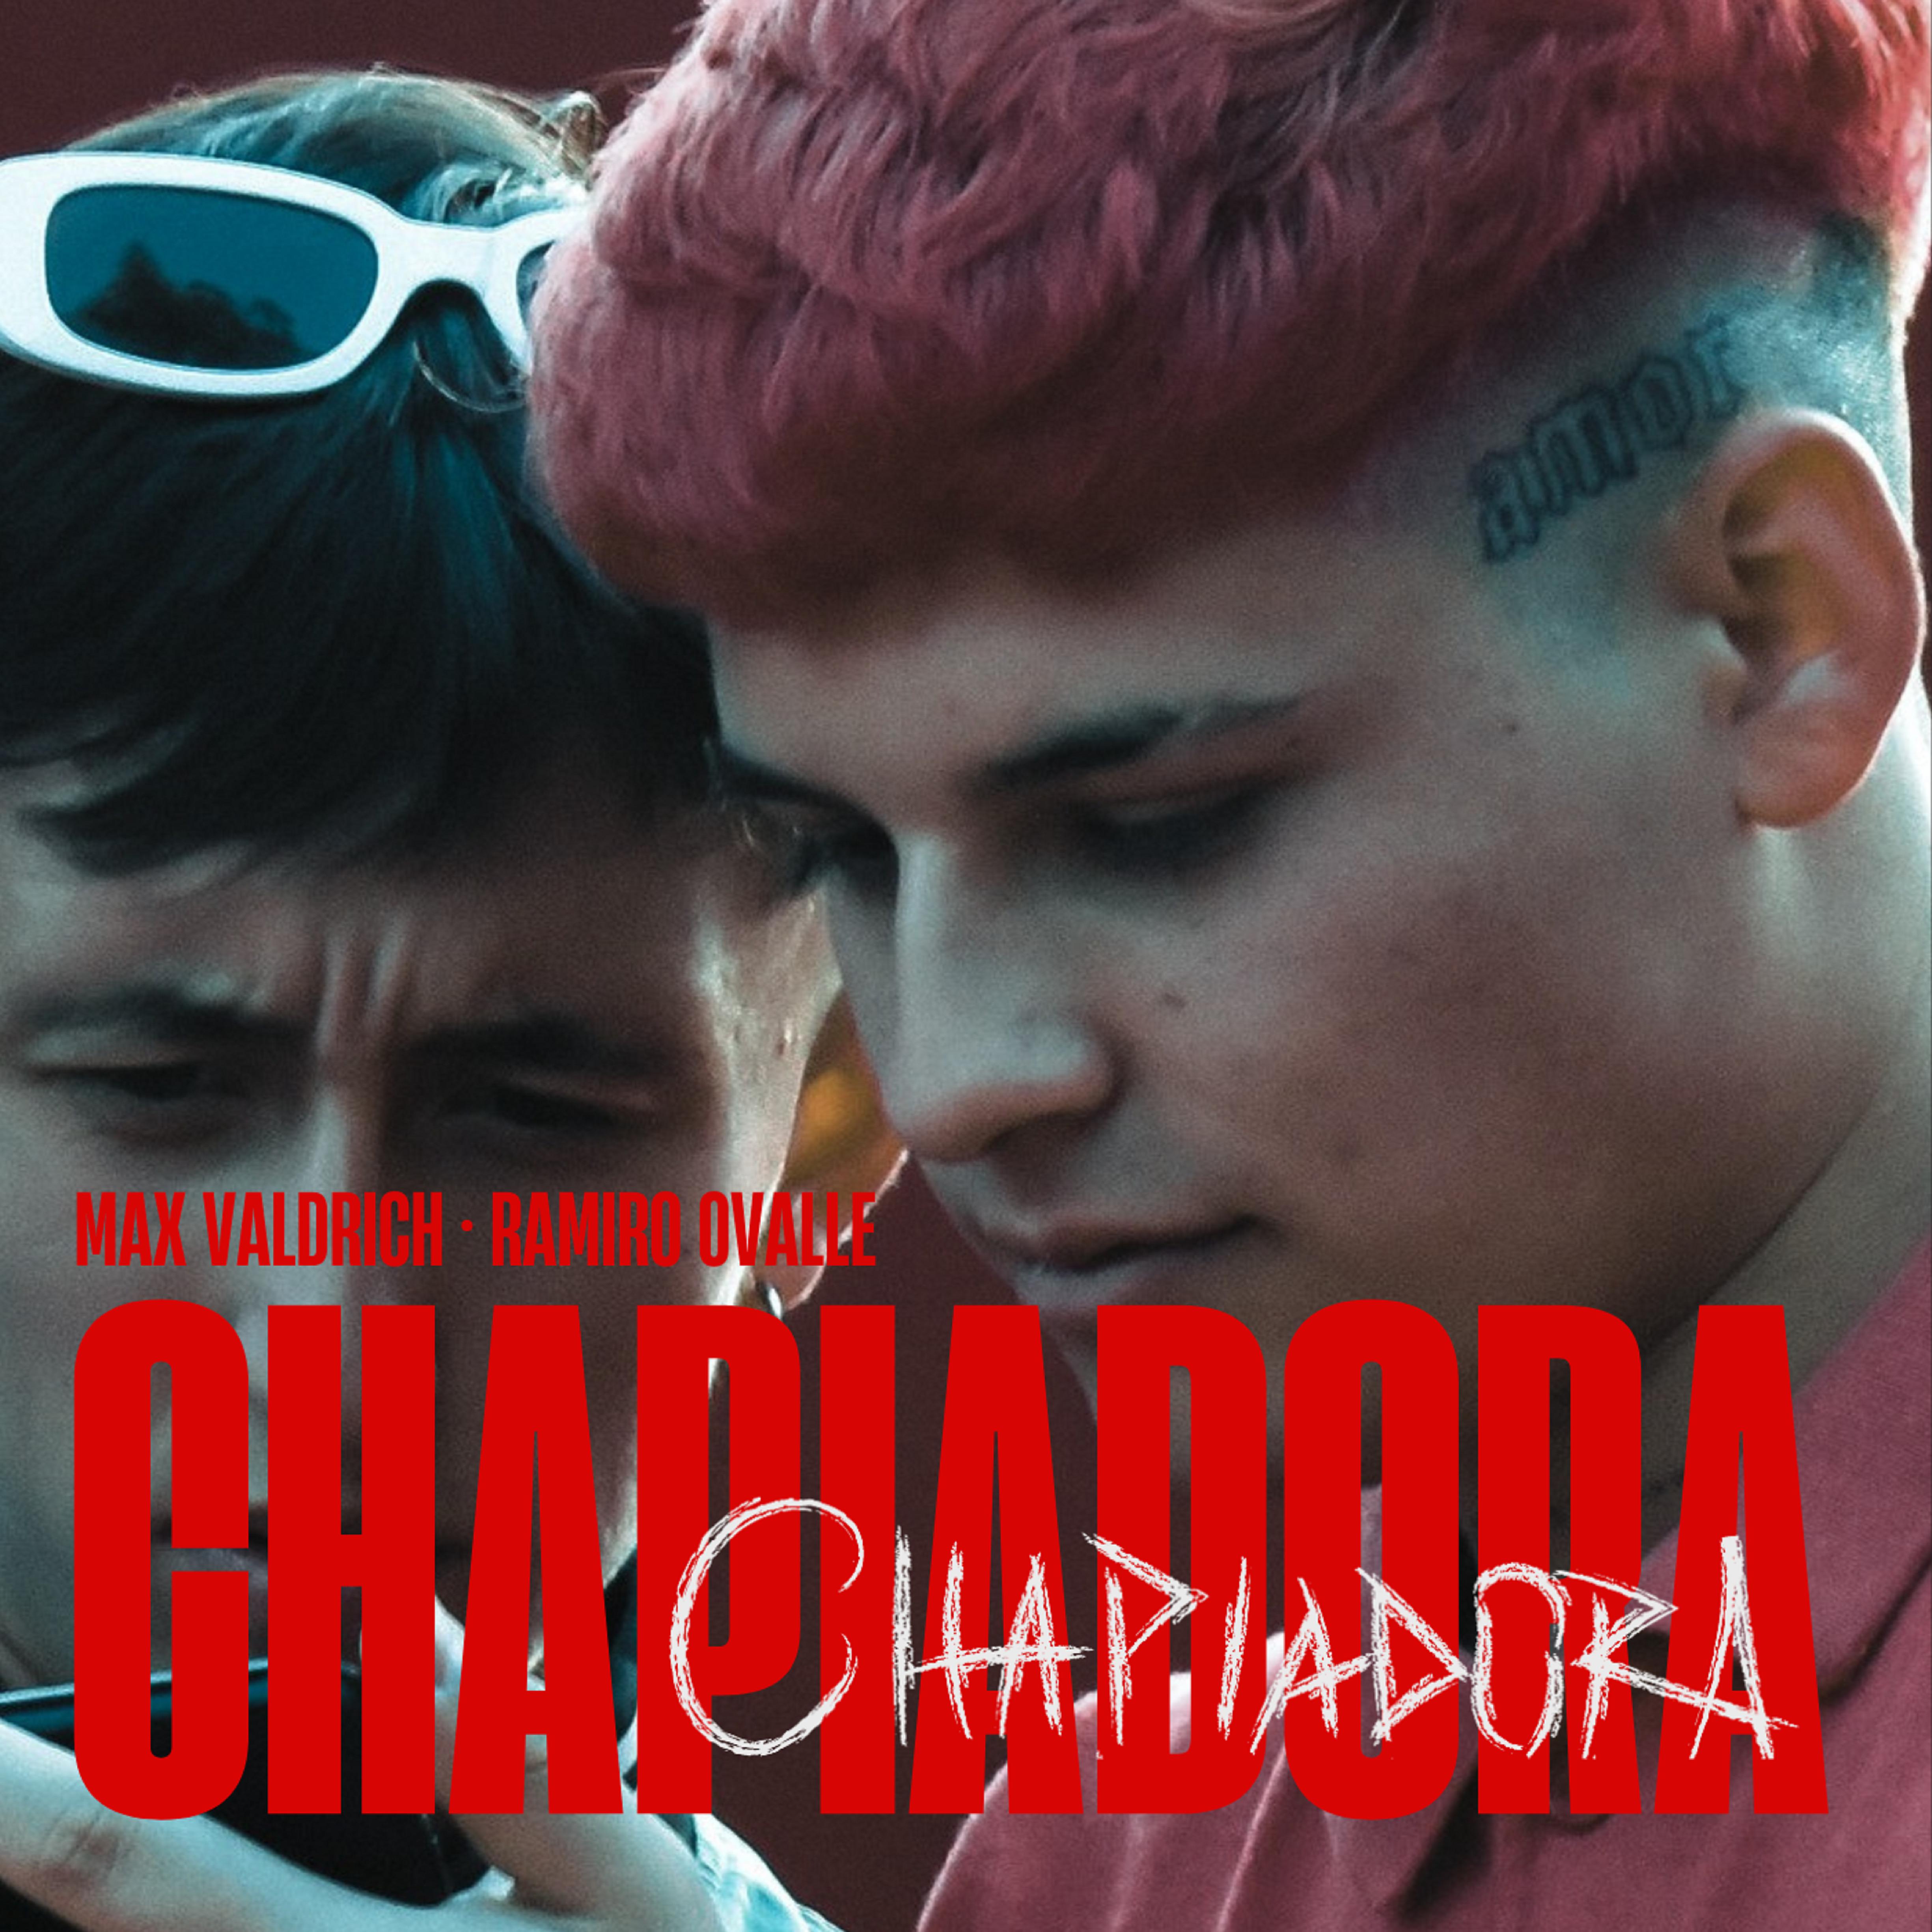 Постер альбома Chapiadora